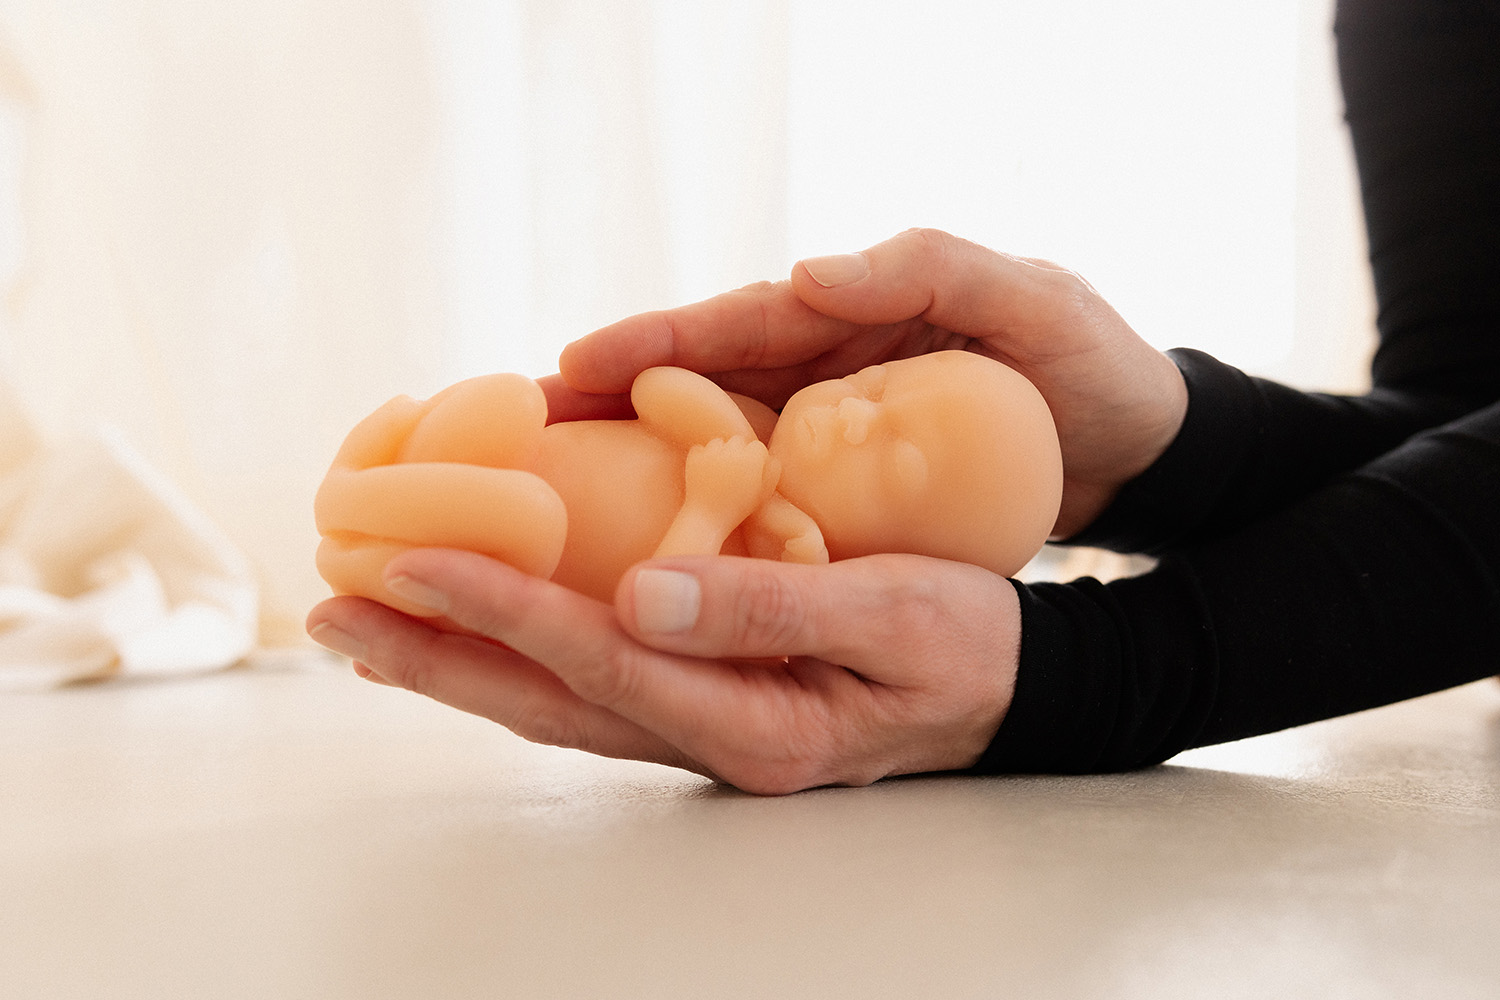 Die Entwicklung des Embryos